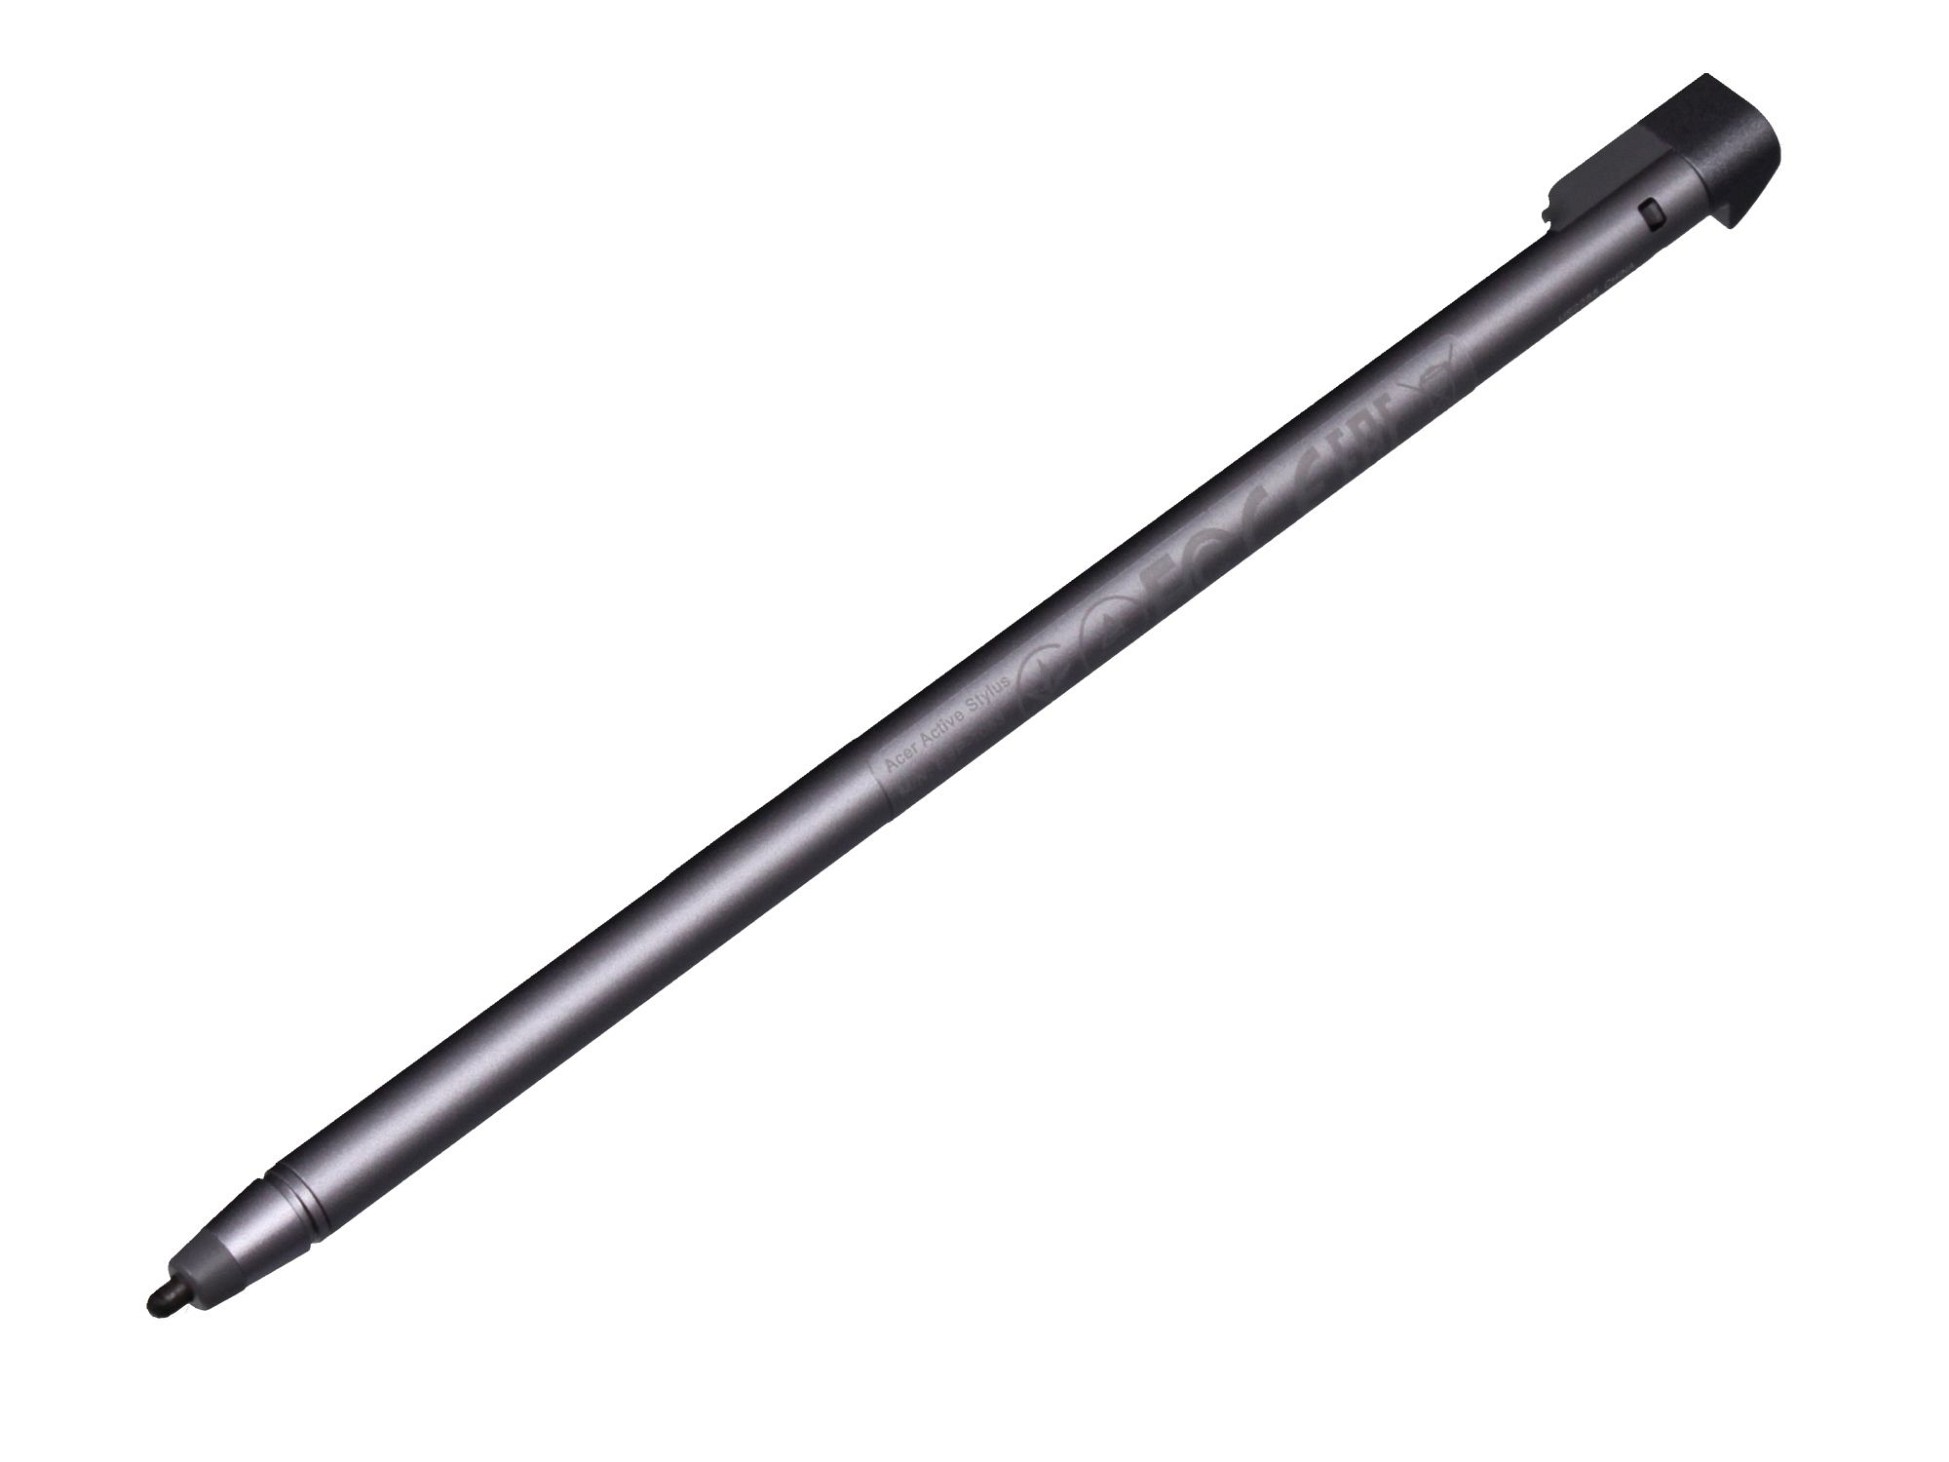 Acer S401 Stylus Pen